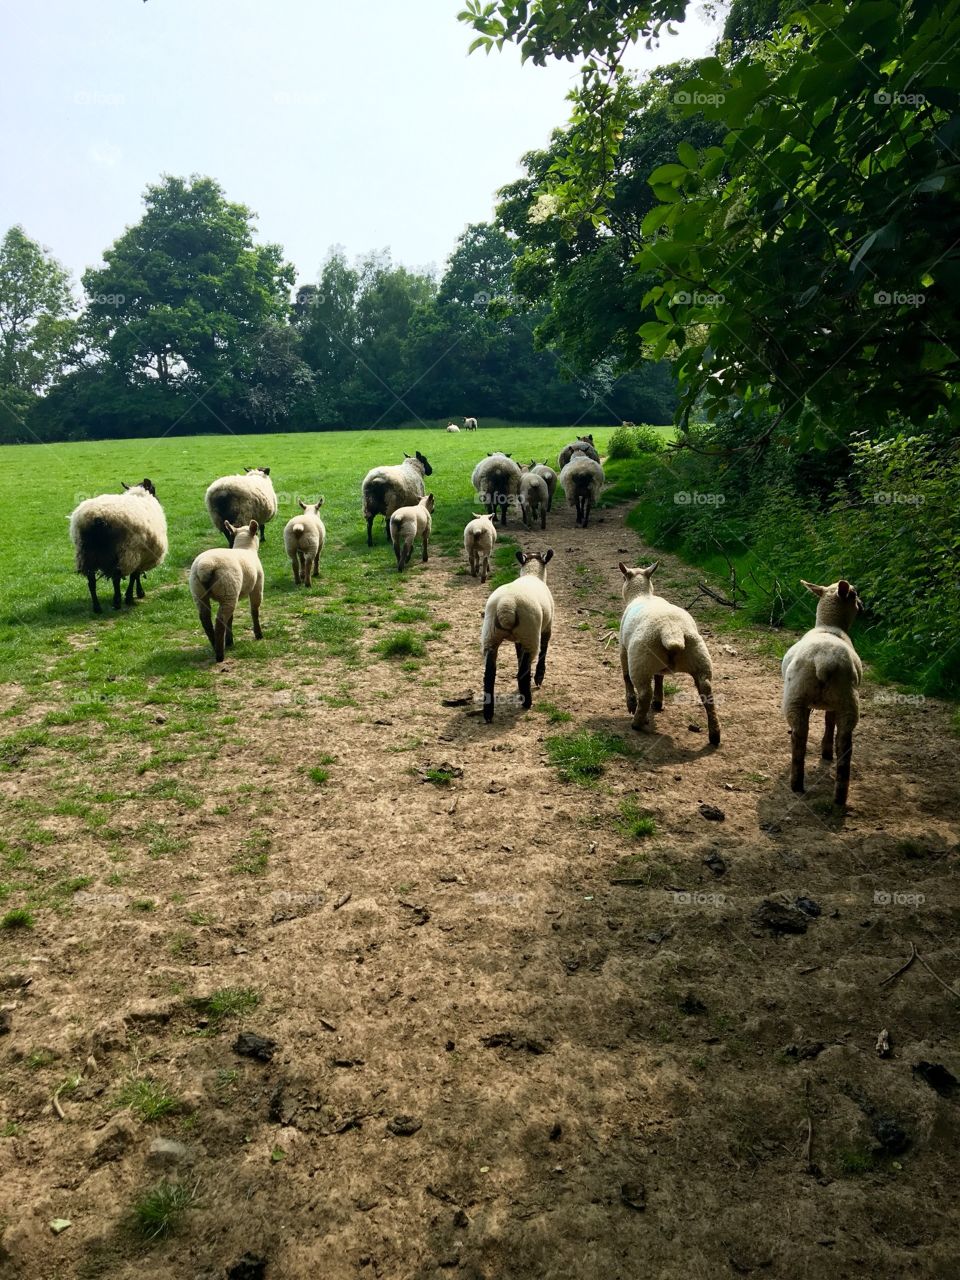 Sheep in Edenbridge 